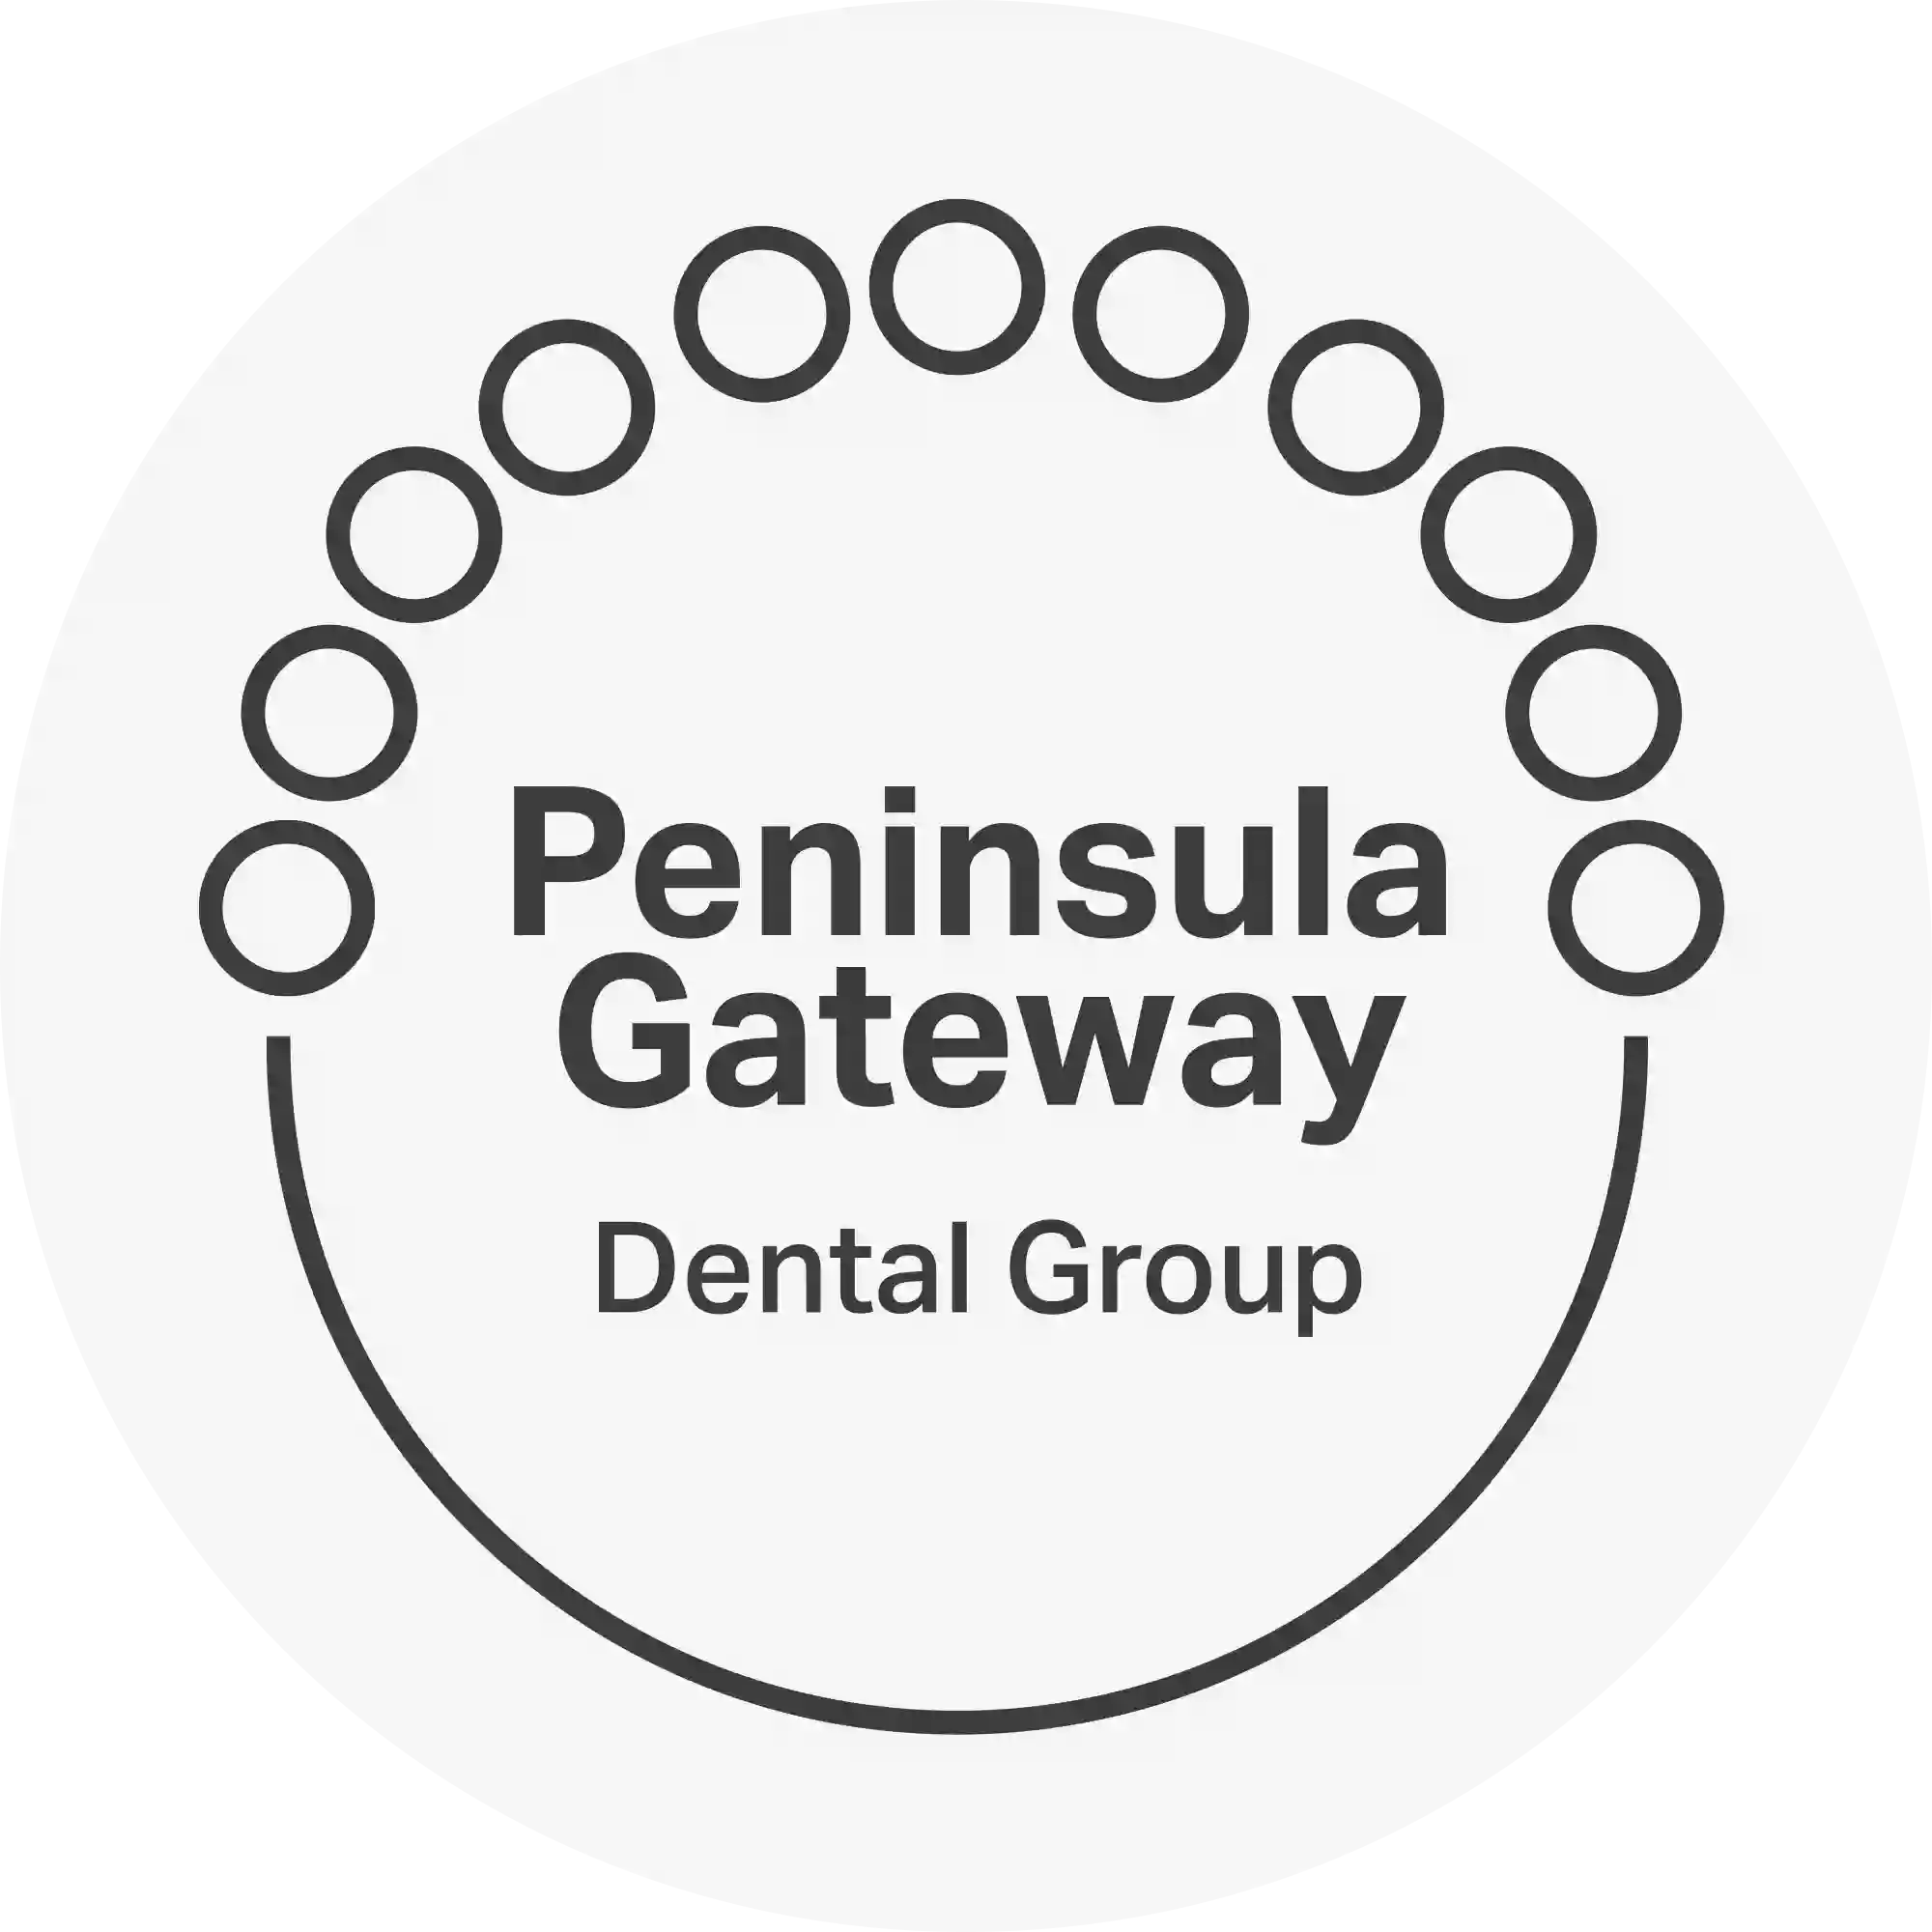 Peninsula Gateway Dental Group